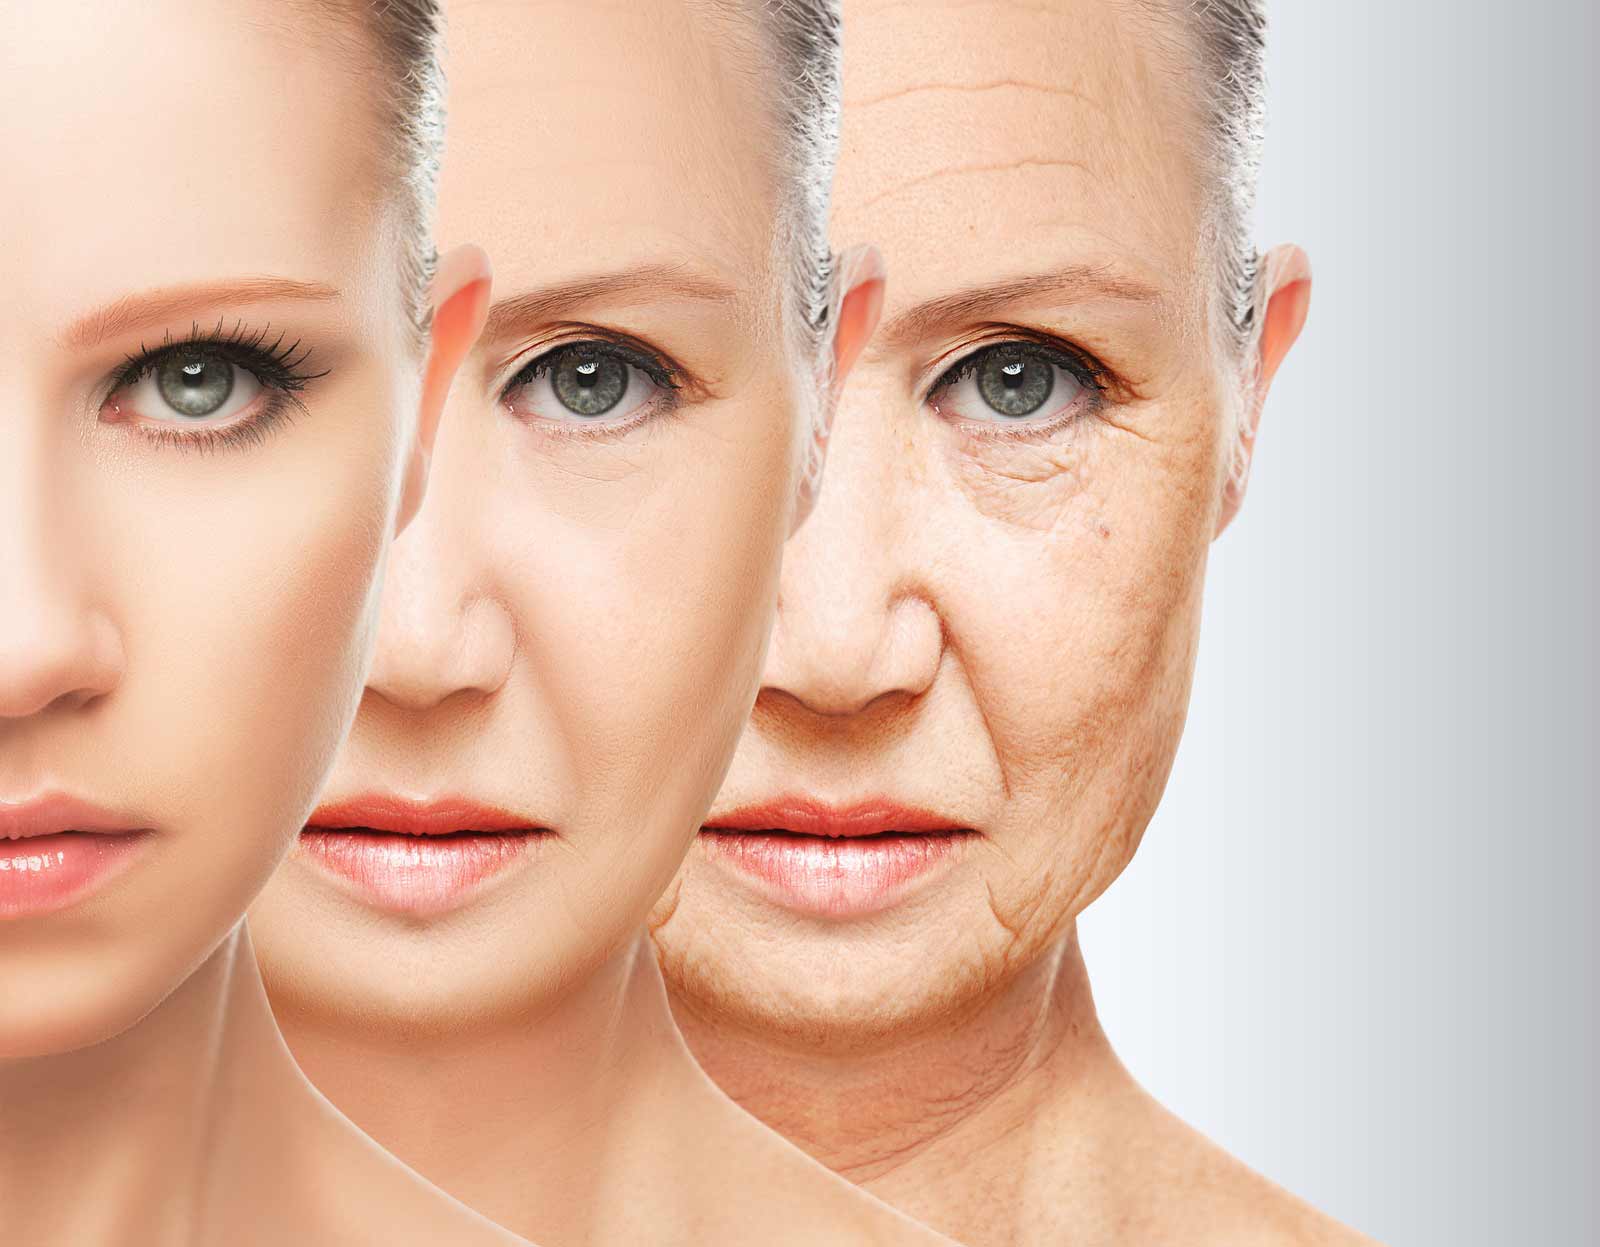 مقدمة كاملة عن جراحة إزالة جلد الوجه وفوائدها